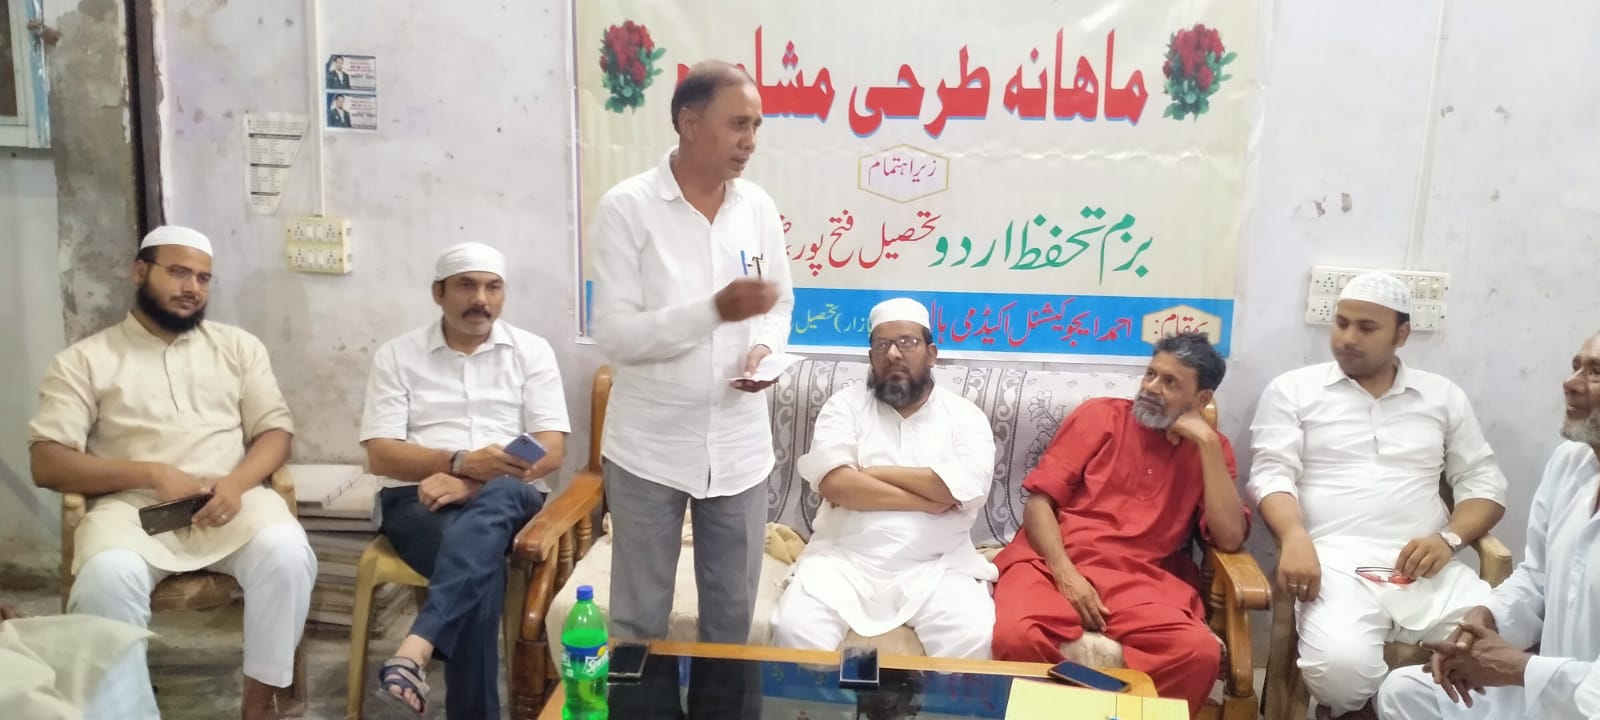 بارہ بنکی: بزم تحفظ اردو کی جانب سے طرحی نشست احمد ایجوکیشنل ہال میں منعقد